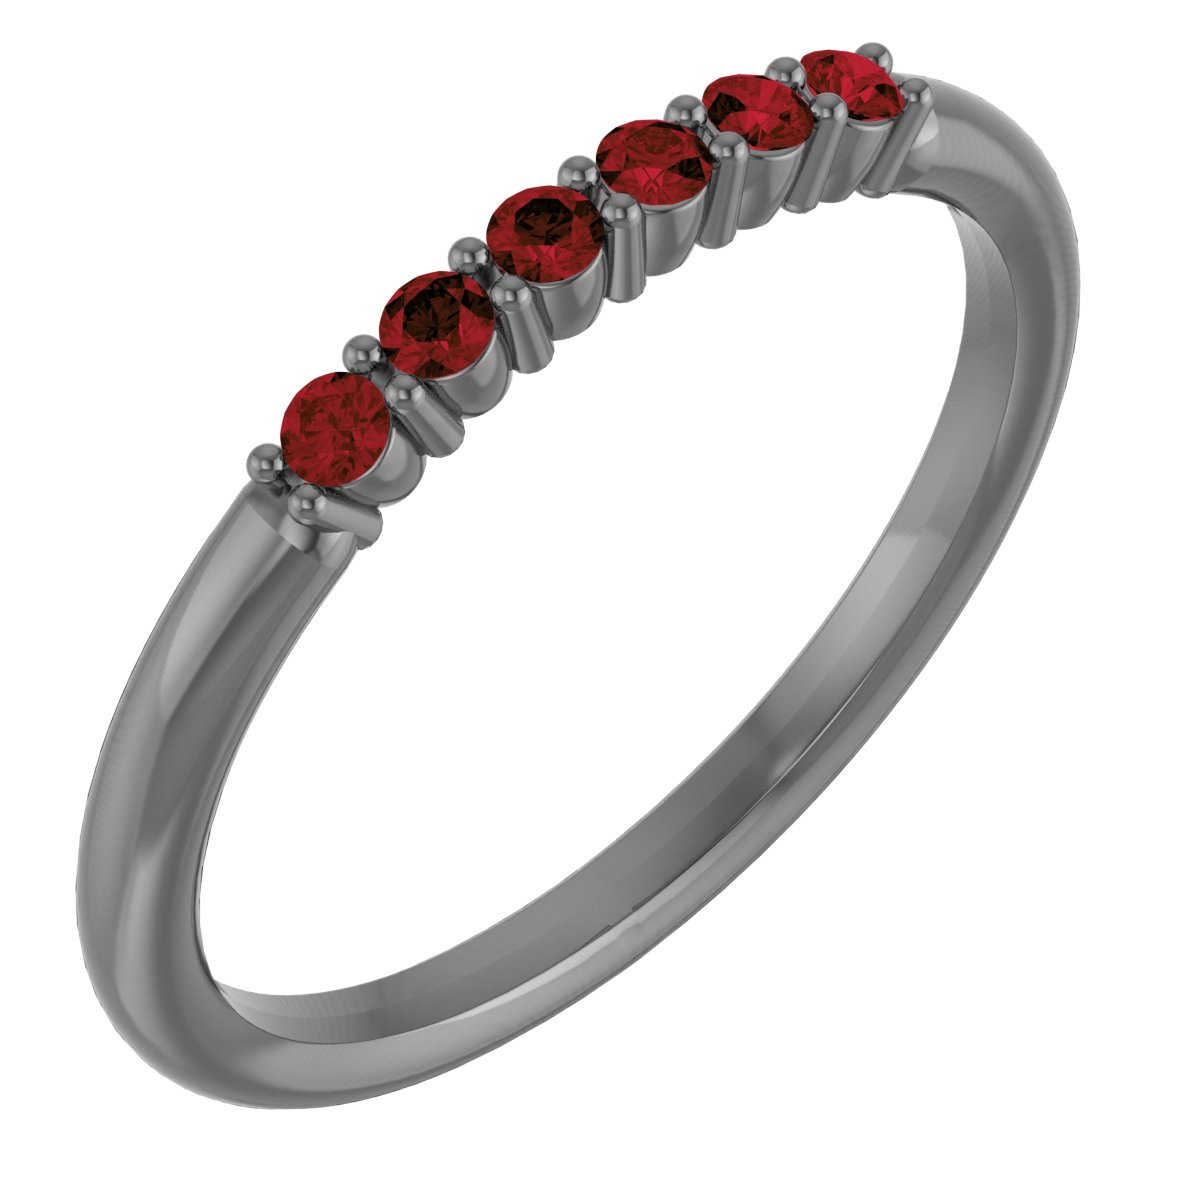 14K Rose Mozambique Garnet Stackable Ring